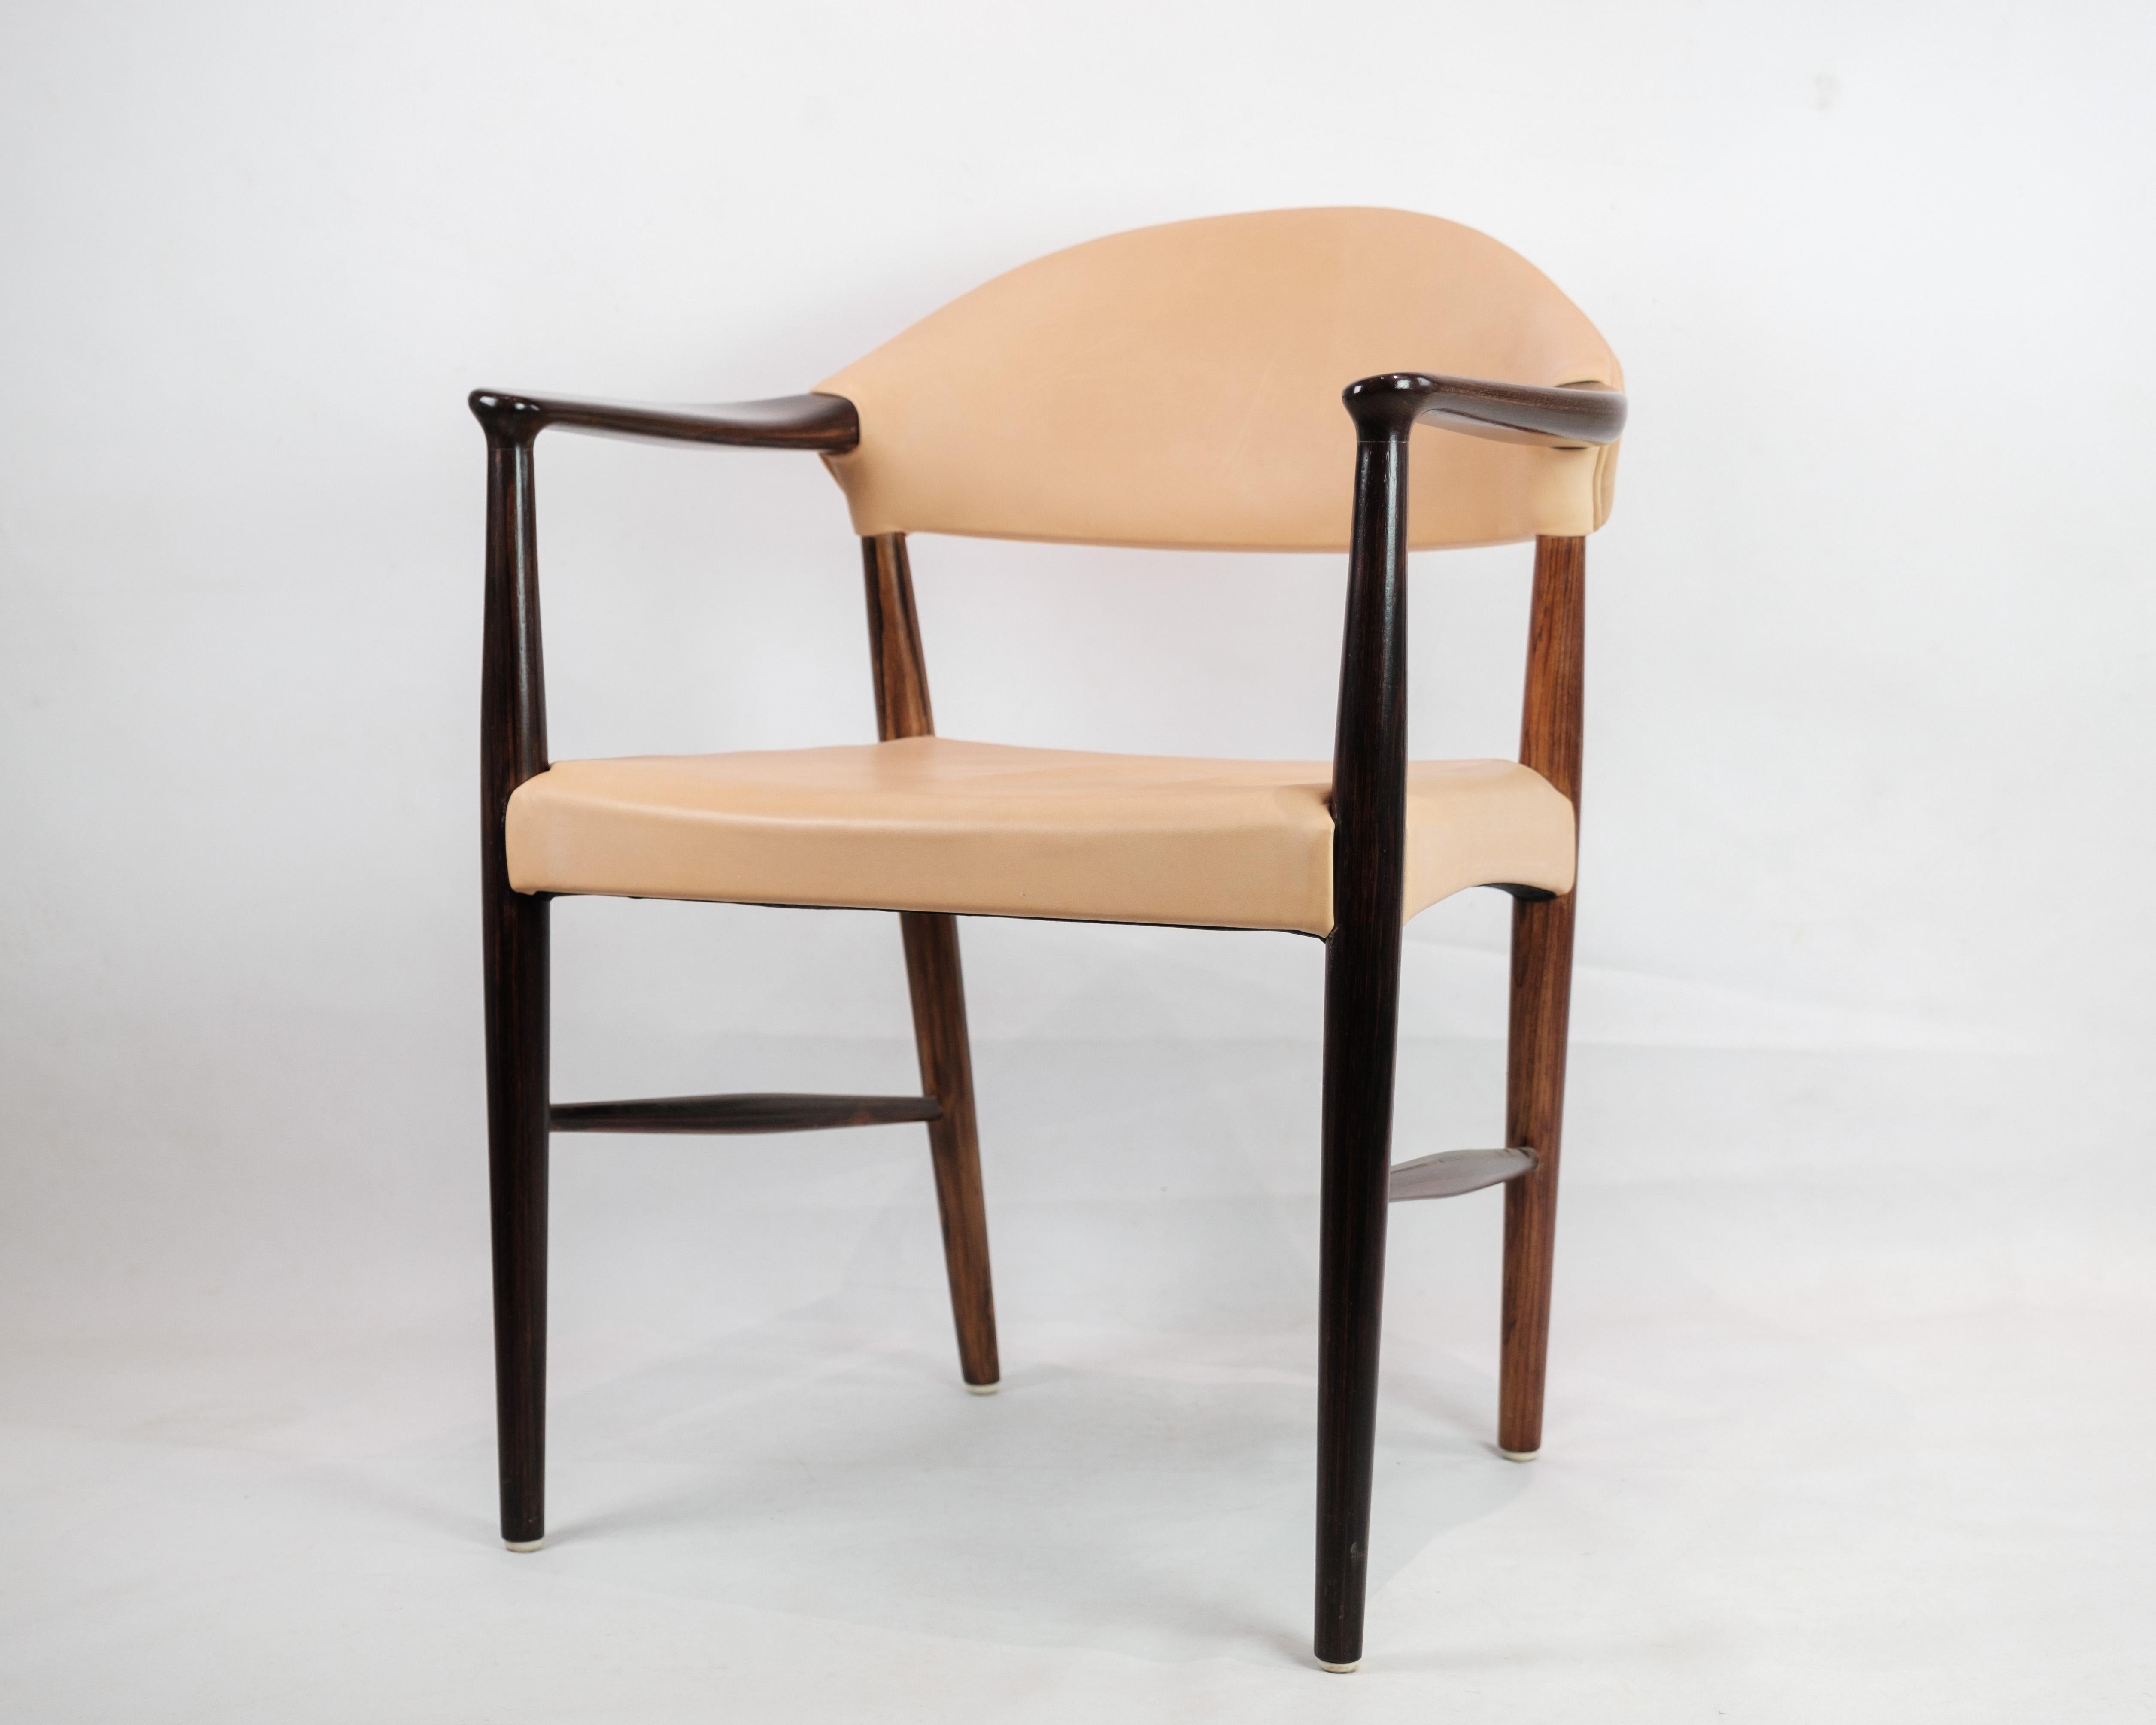 Dieser Schreibtischstuhl/Sessel aus luxuriösem Palisanderholz, ergänzt durch einen hellen Naturlederbezug, ist ein zeitloses Stück dänischen Designs aus den 1960er Jahren. Dieser Stuhl wurde von dem talentierten Designer Kurt Olsen entworfen und